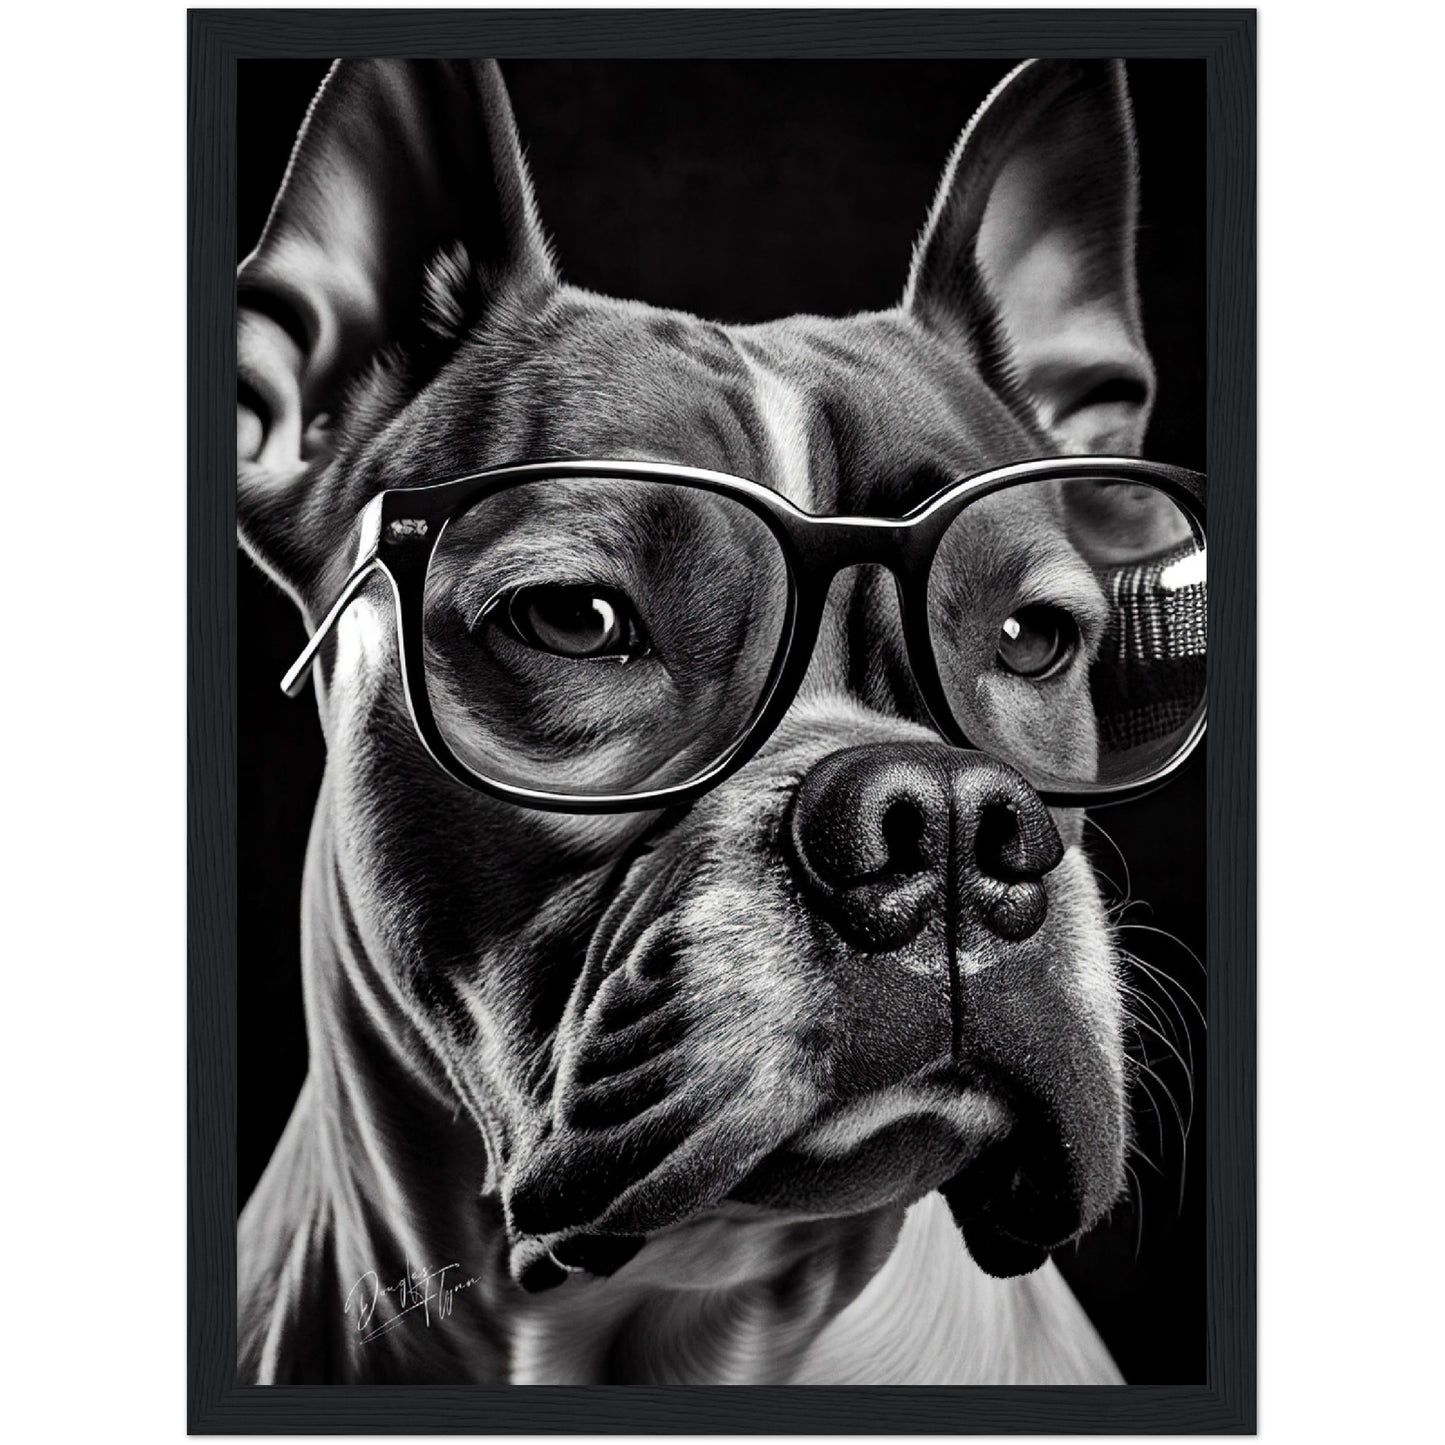 »Stylish Canine« retro poster